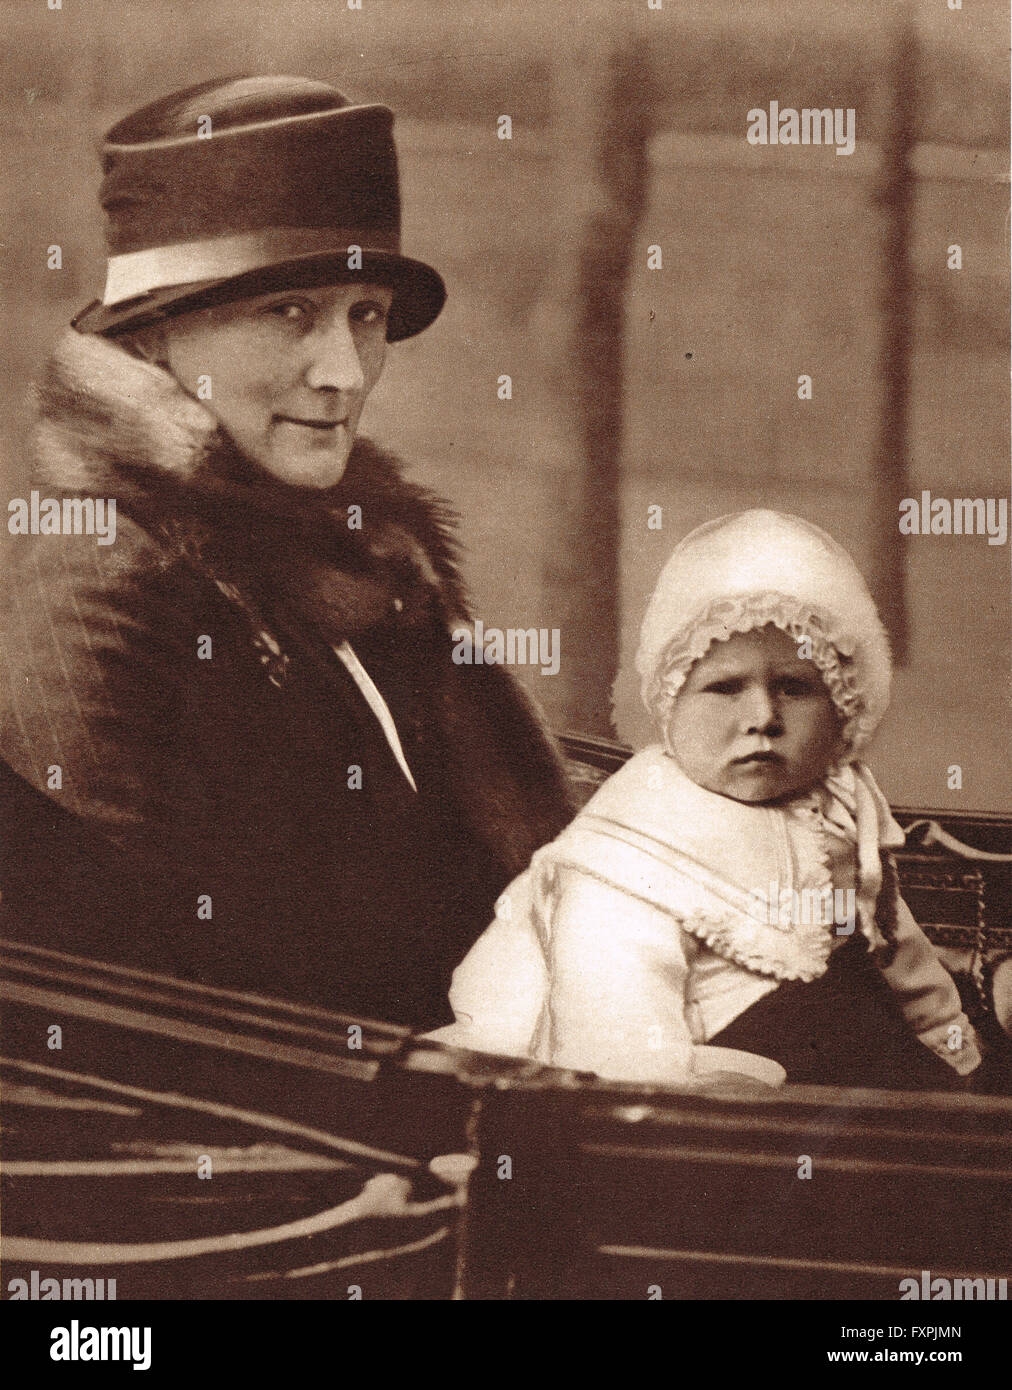 La princesse Elizabeth, la future reine Elizabeth II comme un bébé en 1927 Banque D'Images